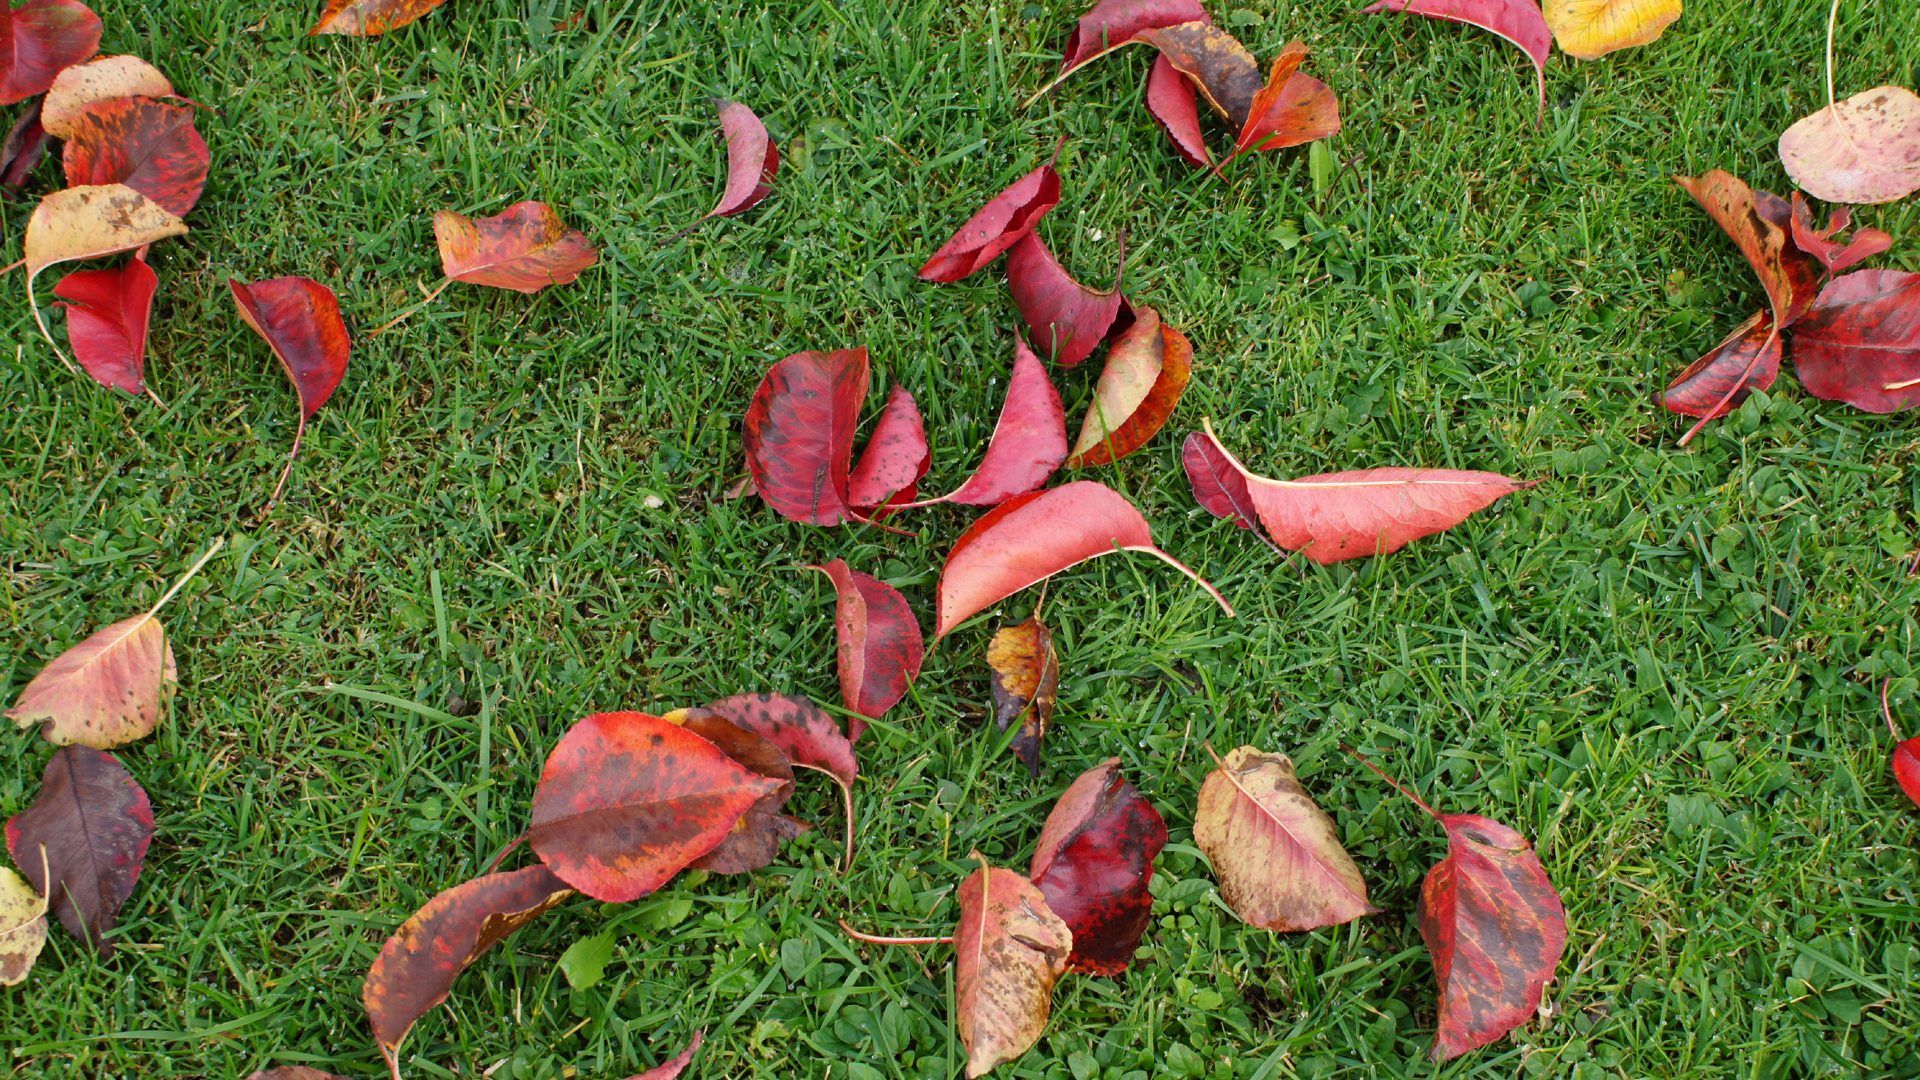 Fotostrecke Herbst Abbildung 35: Die Blätter fallen